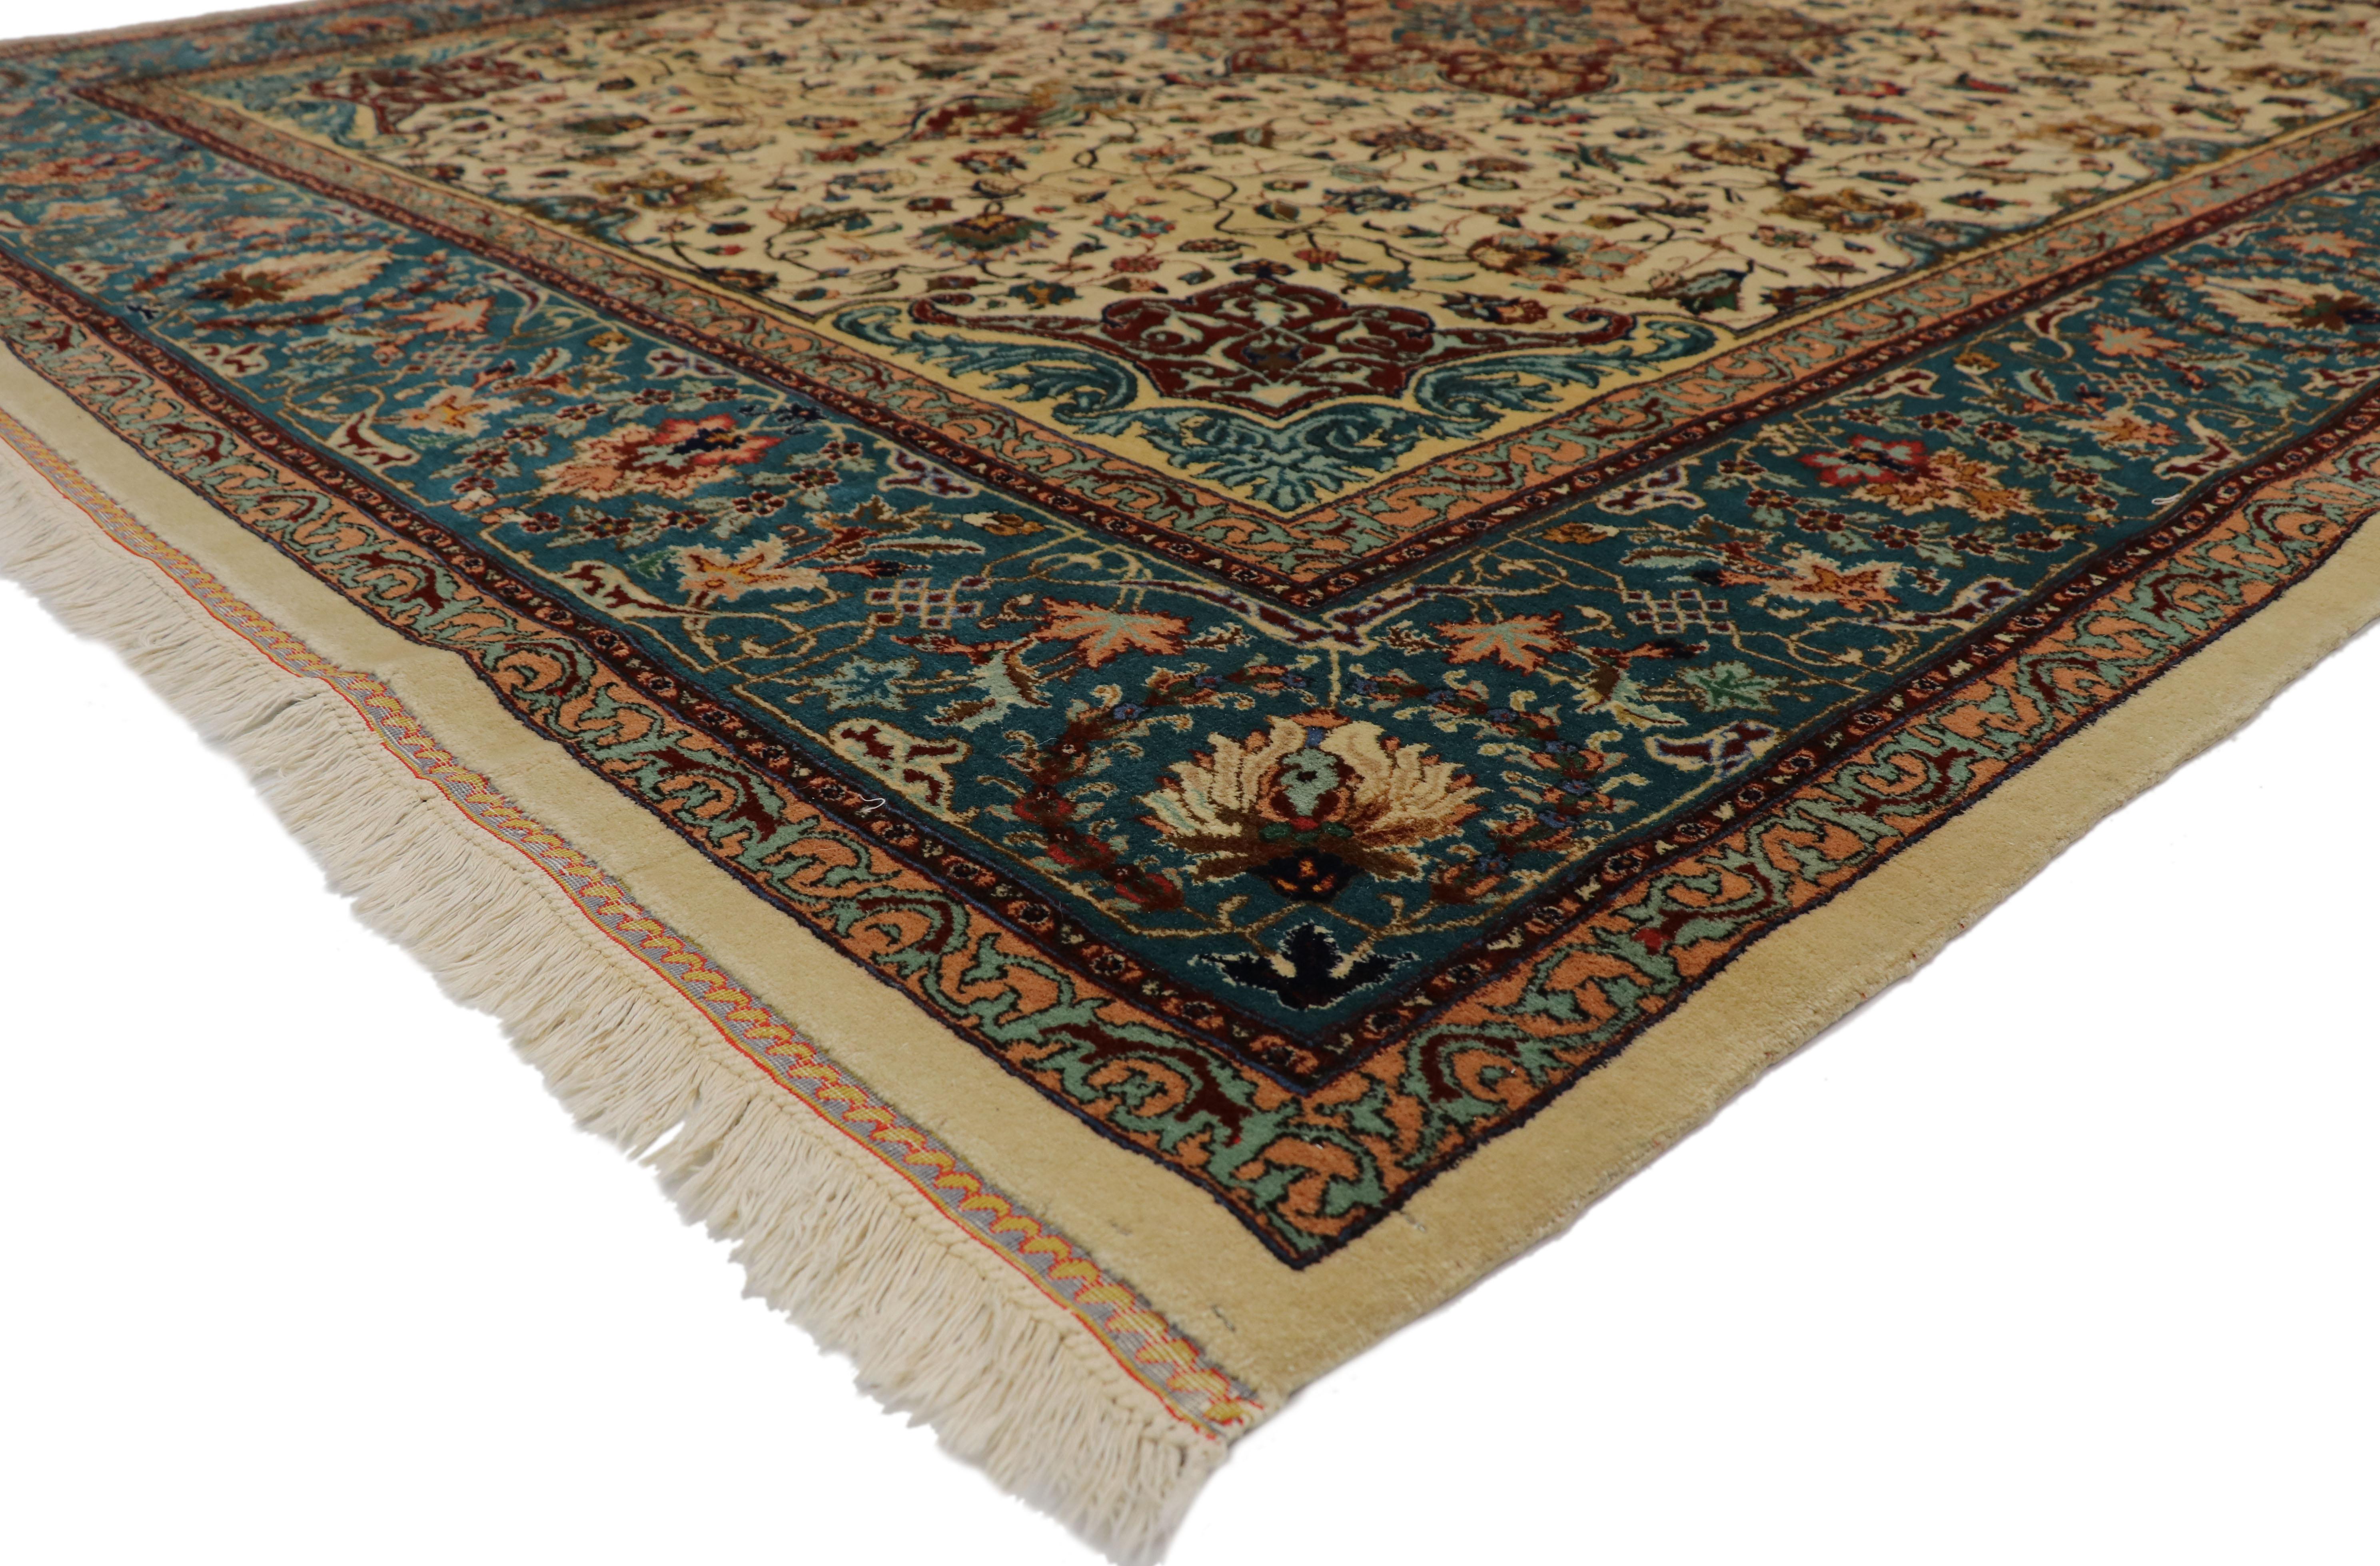 77352, Persischer Tabriz-Teppich im barocken venezianischen Stil 09'00 x 11'03. Mit seinen satten Farben und seinem exotischen Glanz verkörpert dieser handgeknüpfte Teppich aus alter persischer Tabriz-Wolle wahrhaftig den venezianischen Stil mit